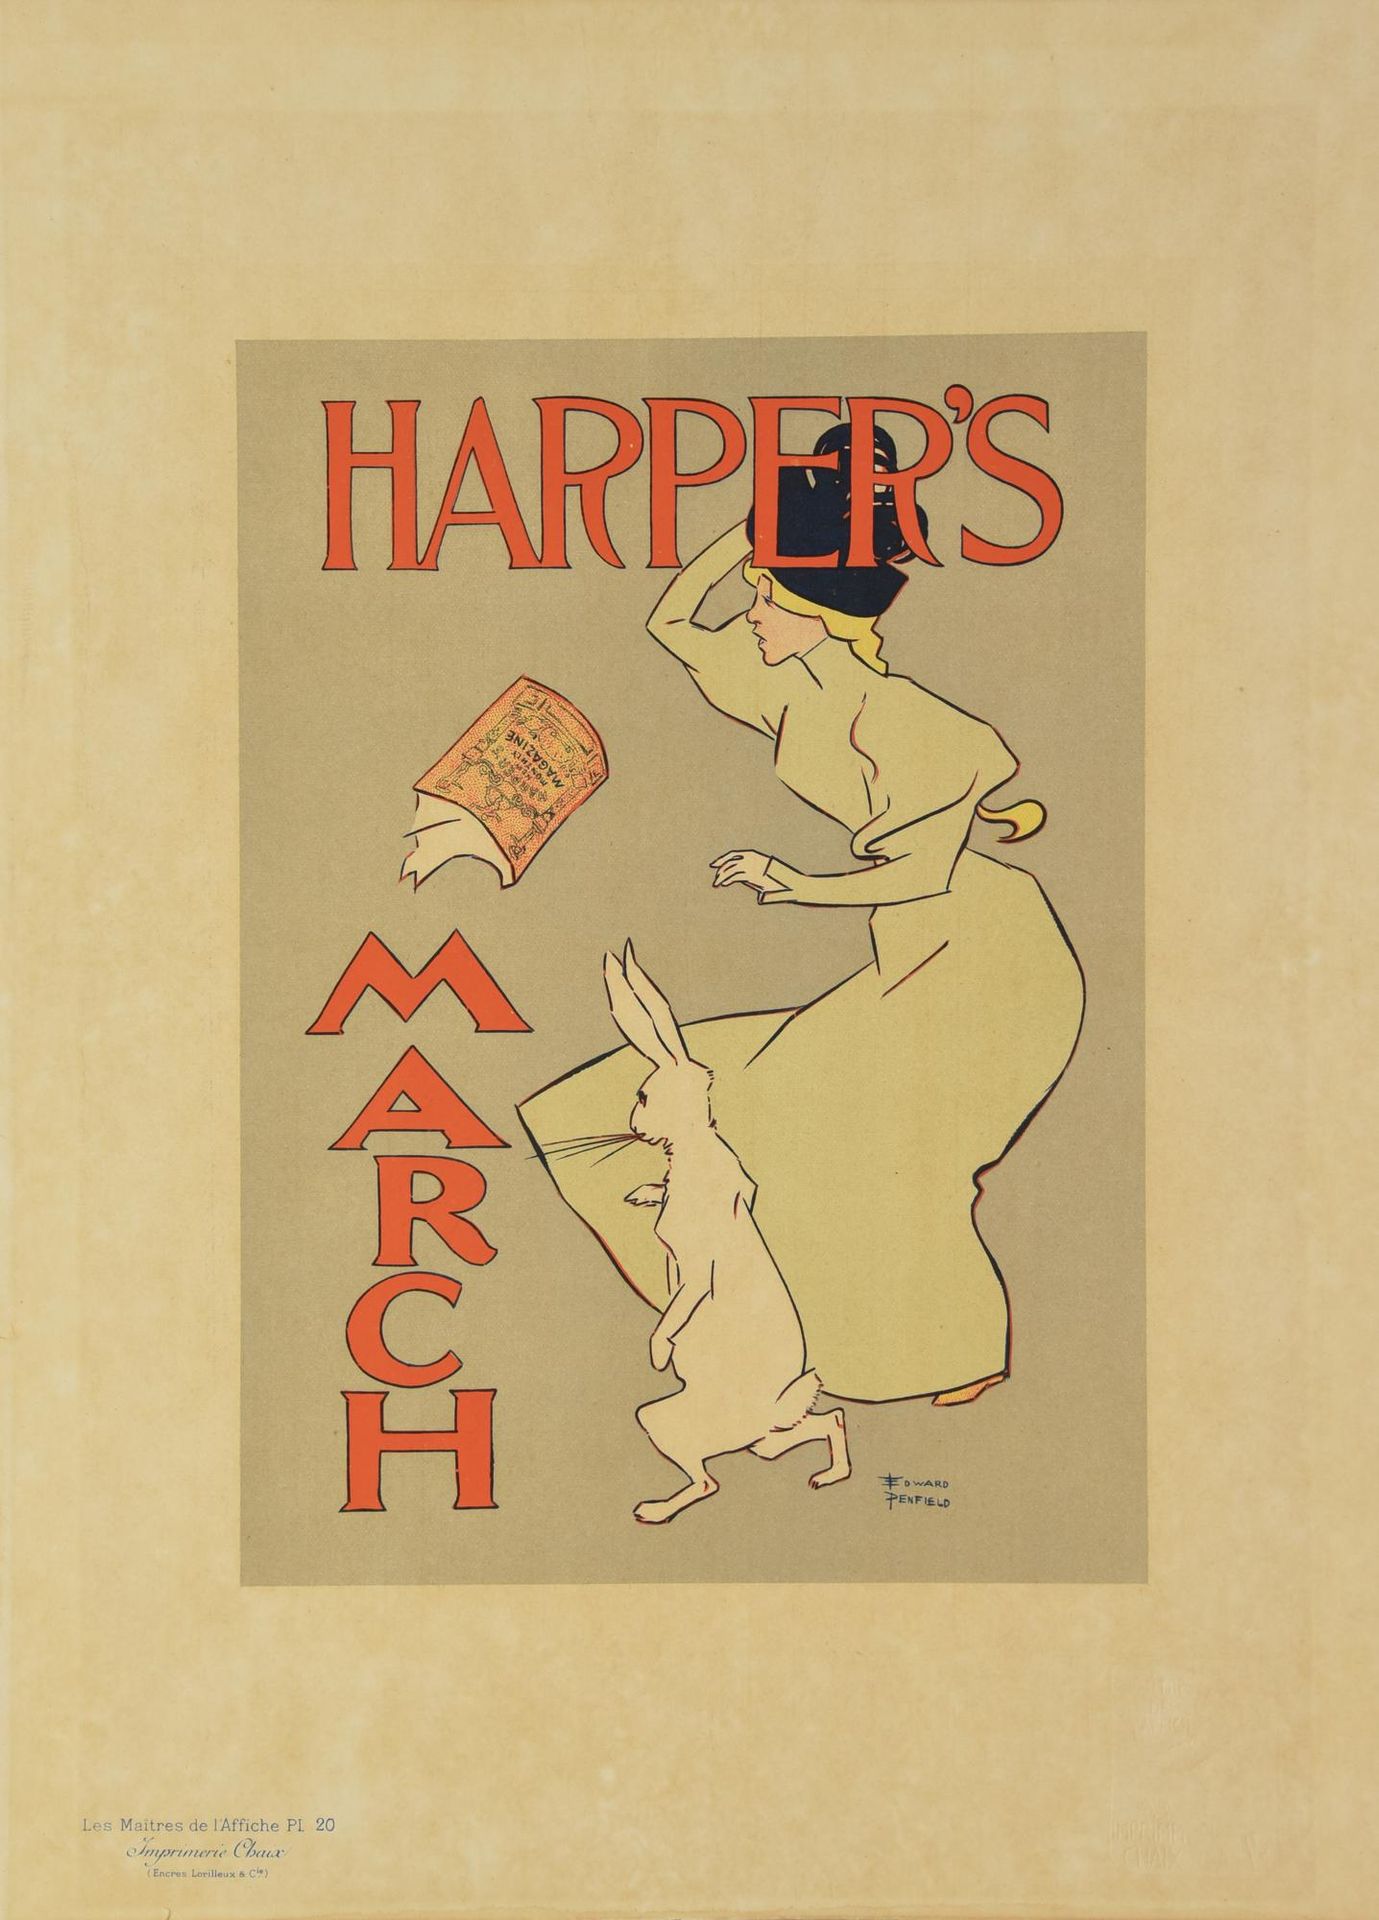 HARPER'S MARCH MARCHA DE HARPER

litografía, 39,5x29 cm 

sello en relieve Impri&hellip;